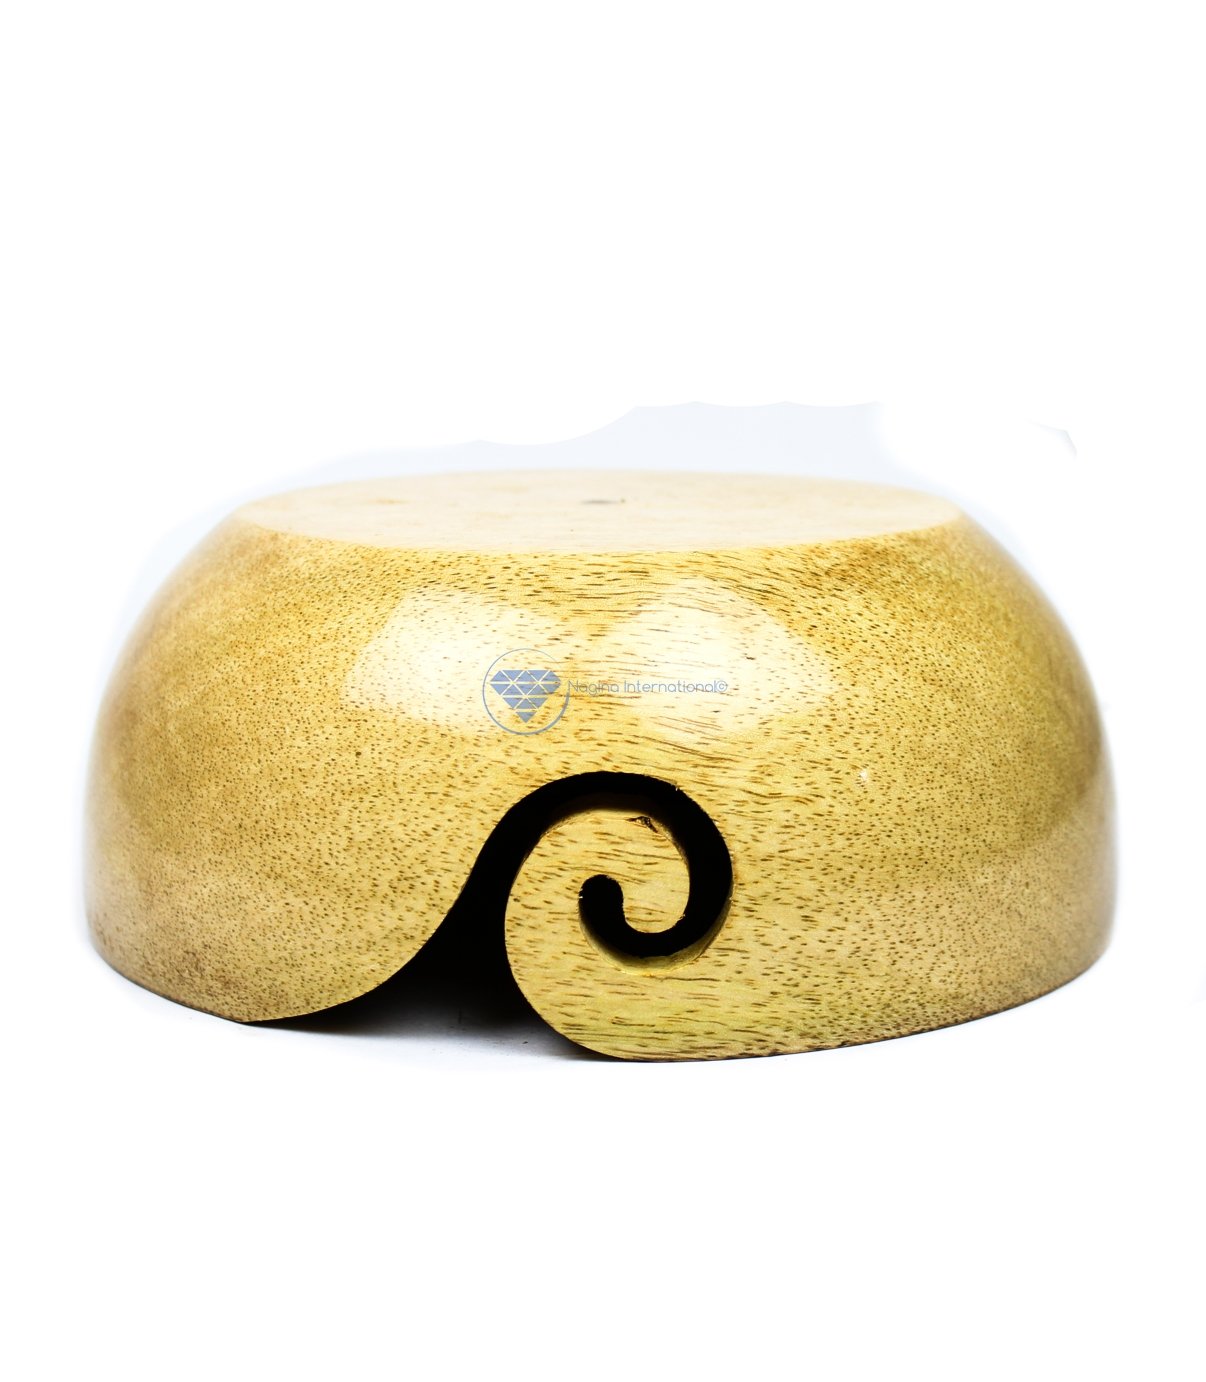 Nagina International Mango Wood Crafted Yarn Storage Portable Bowl With Innovative Yarn Dispensing Spiral Cut Medium (7x3x7)